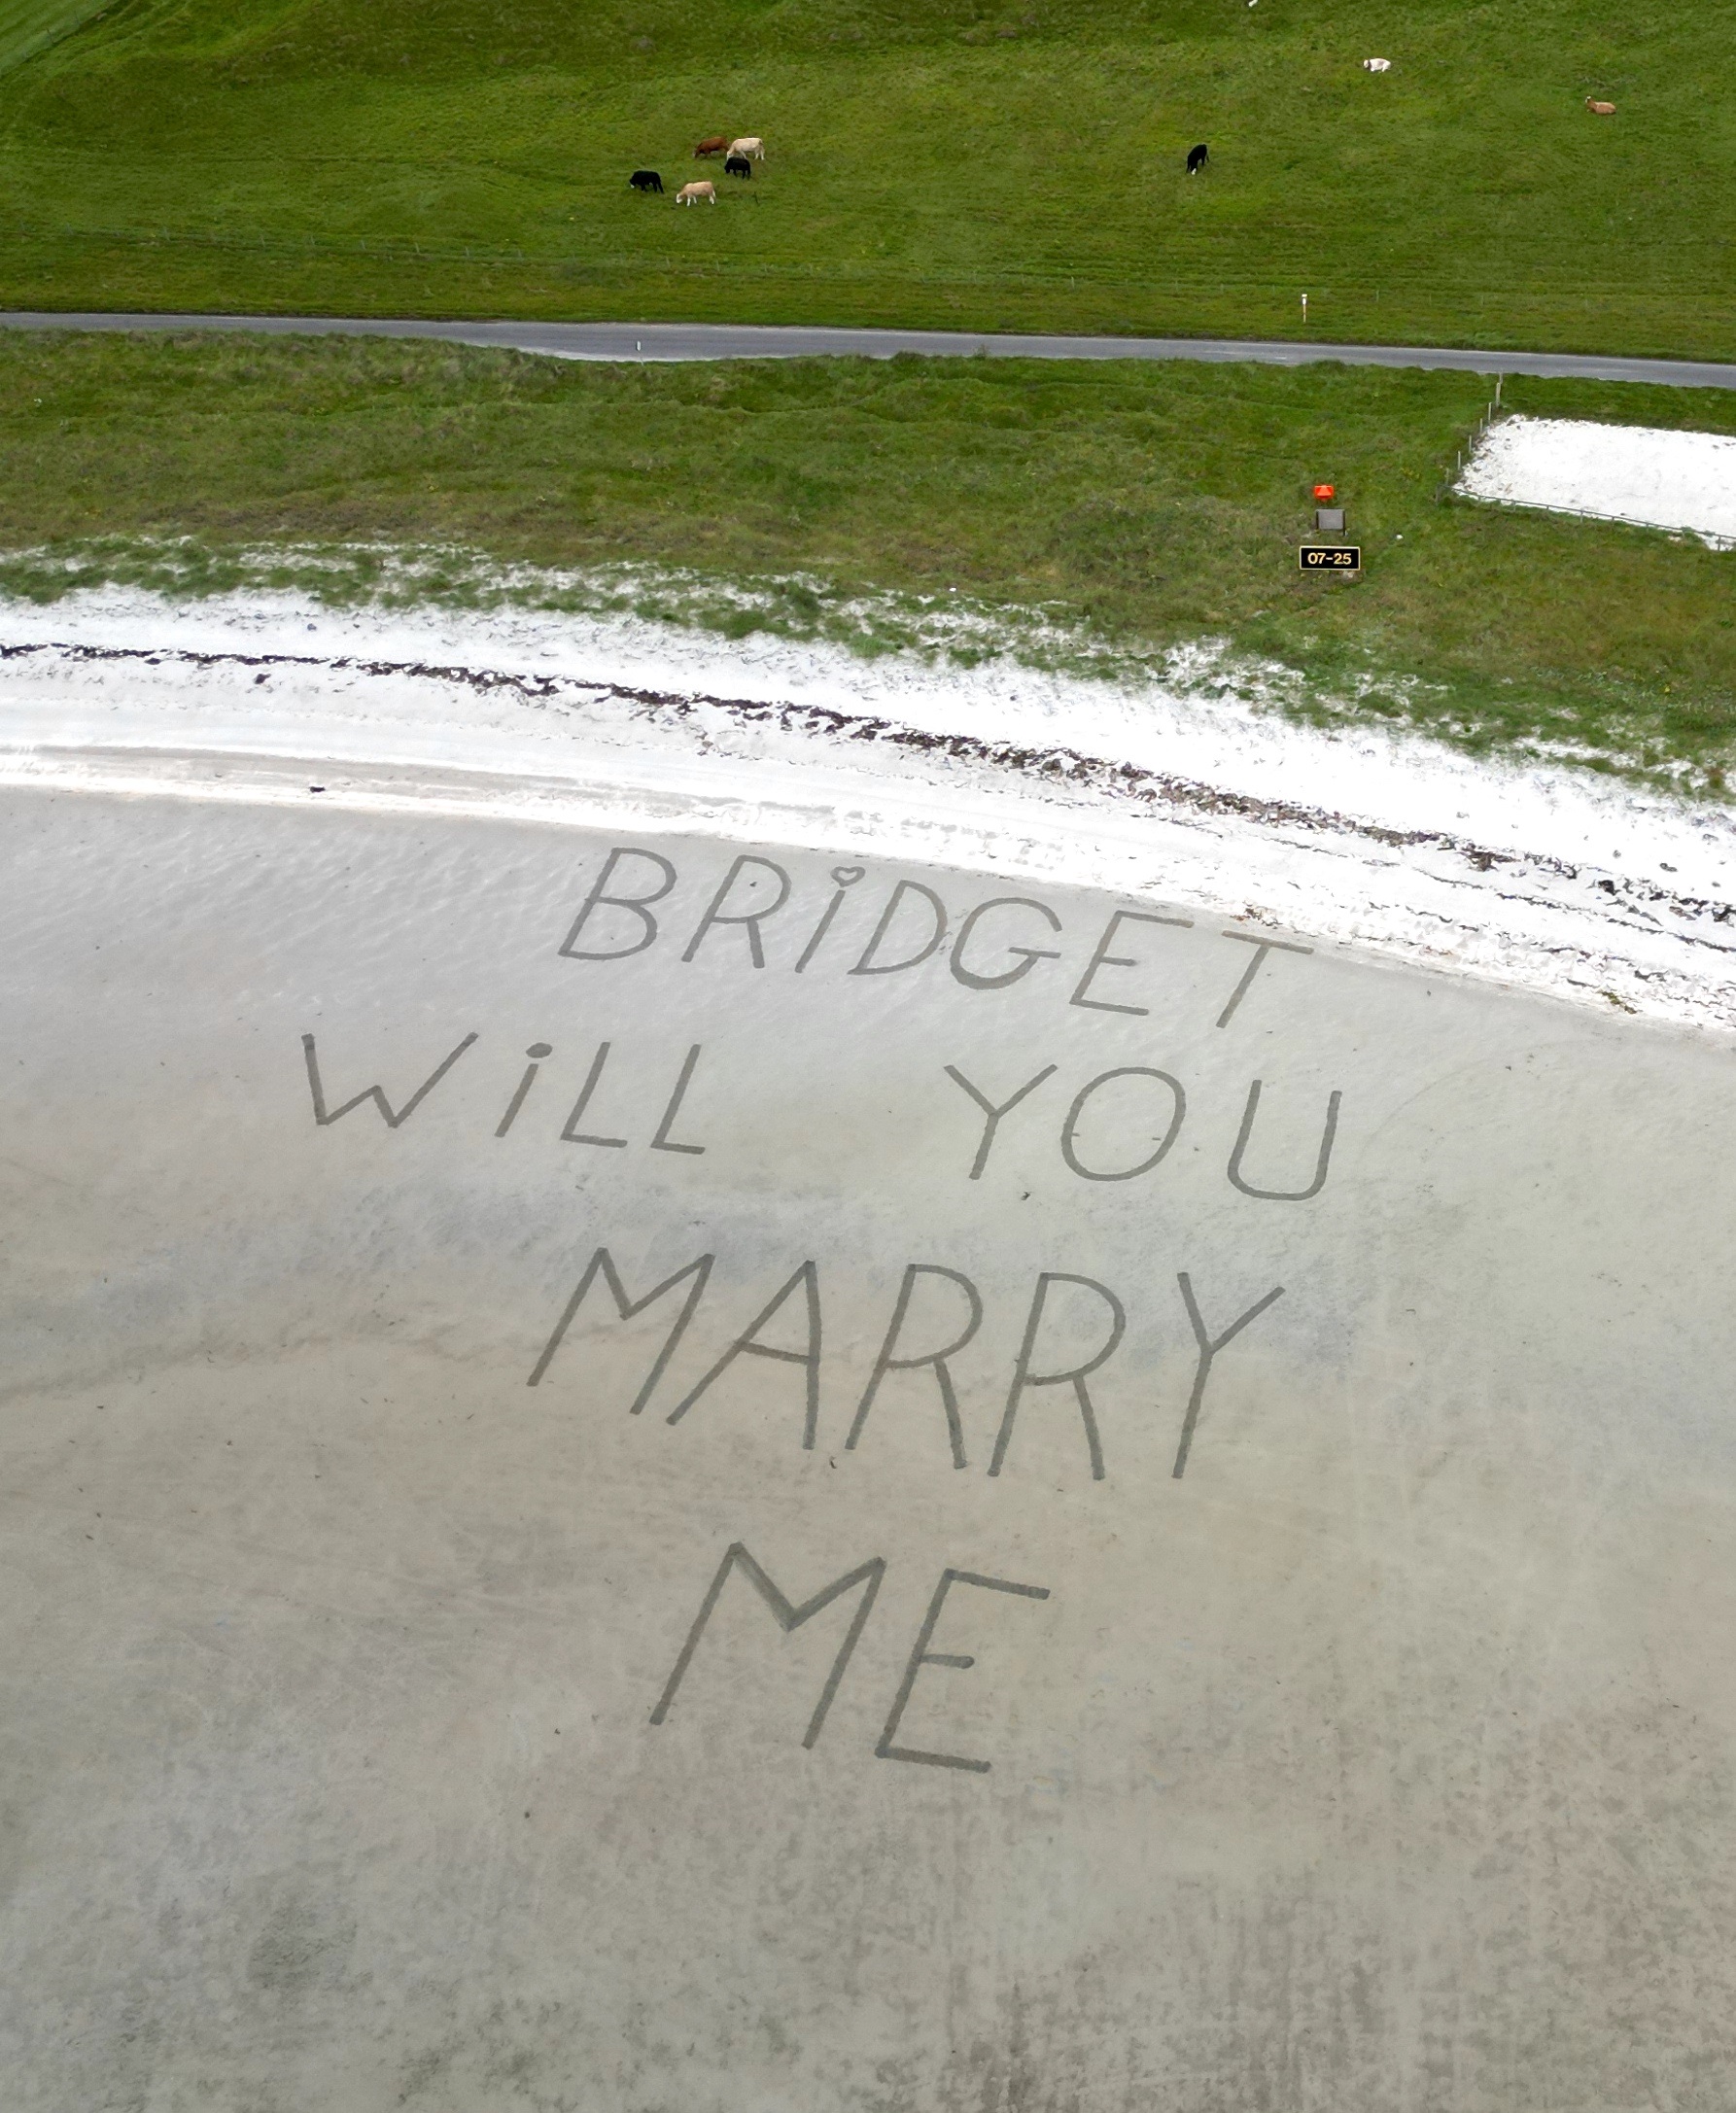 Stephen hatte seinen Vorschlag in den Sand gegraben, den Bridget vom Flugzeug aus las